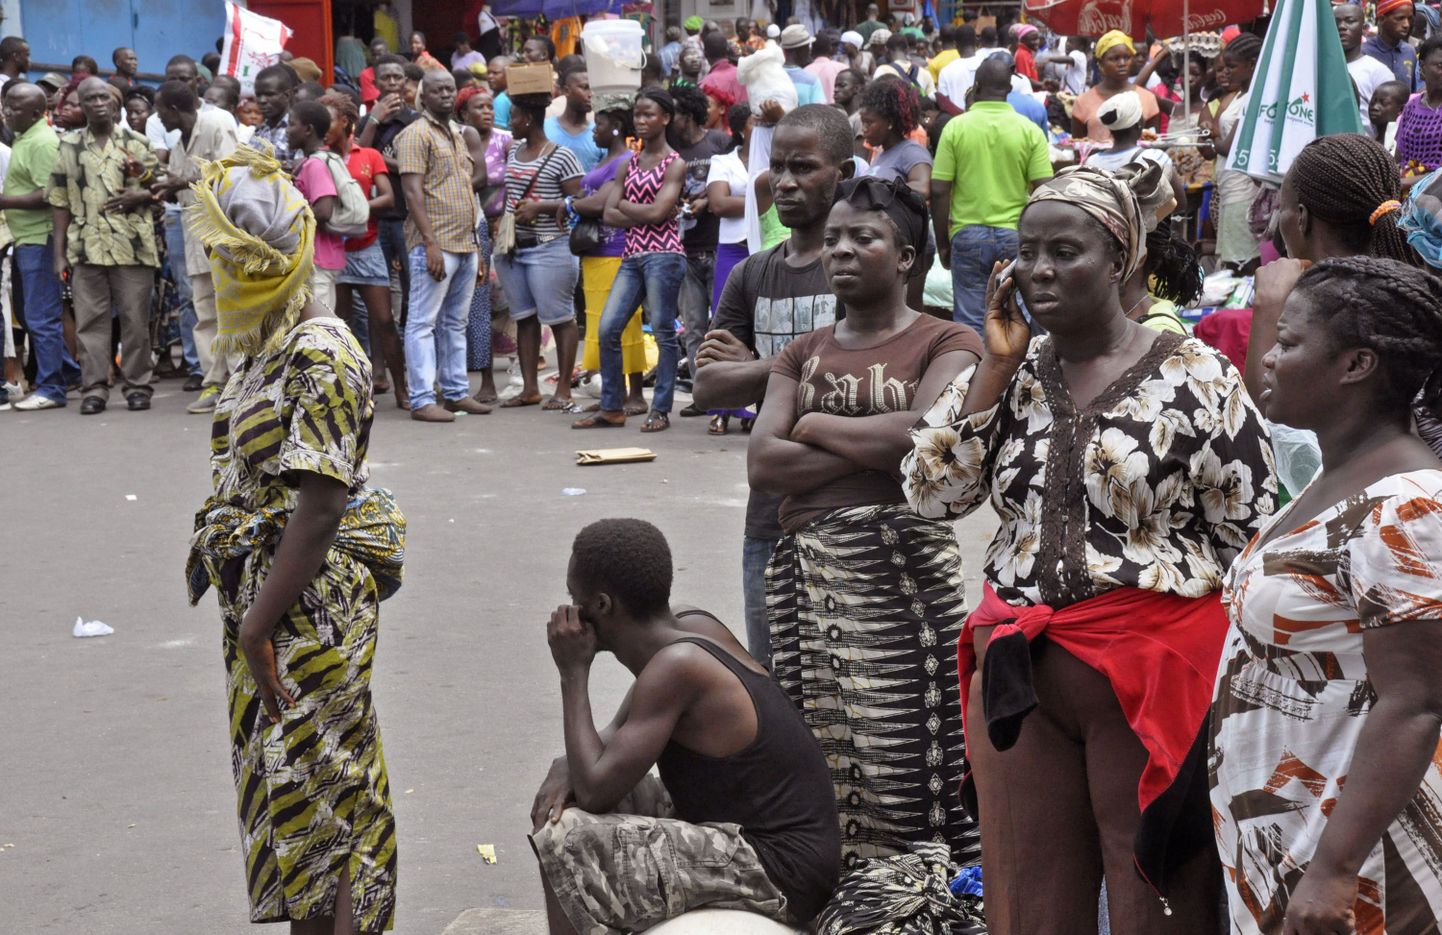 География распространения эпидемии лихорадки Эбола расширяется - теперь болезнь перекинулась с Западной Африки на Центральную.